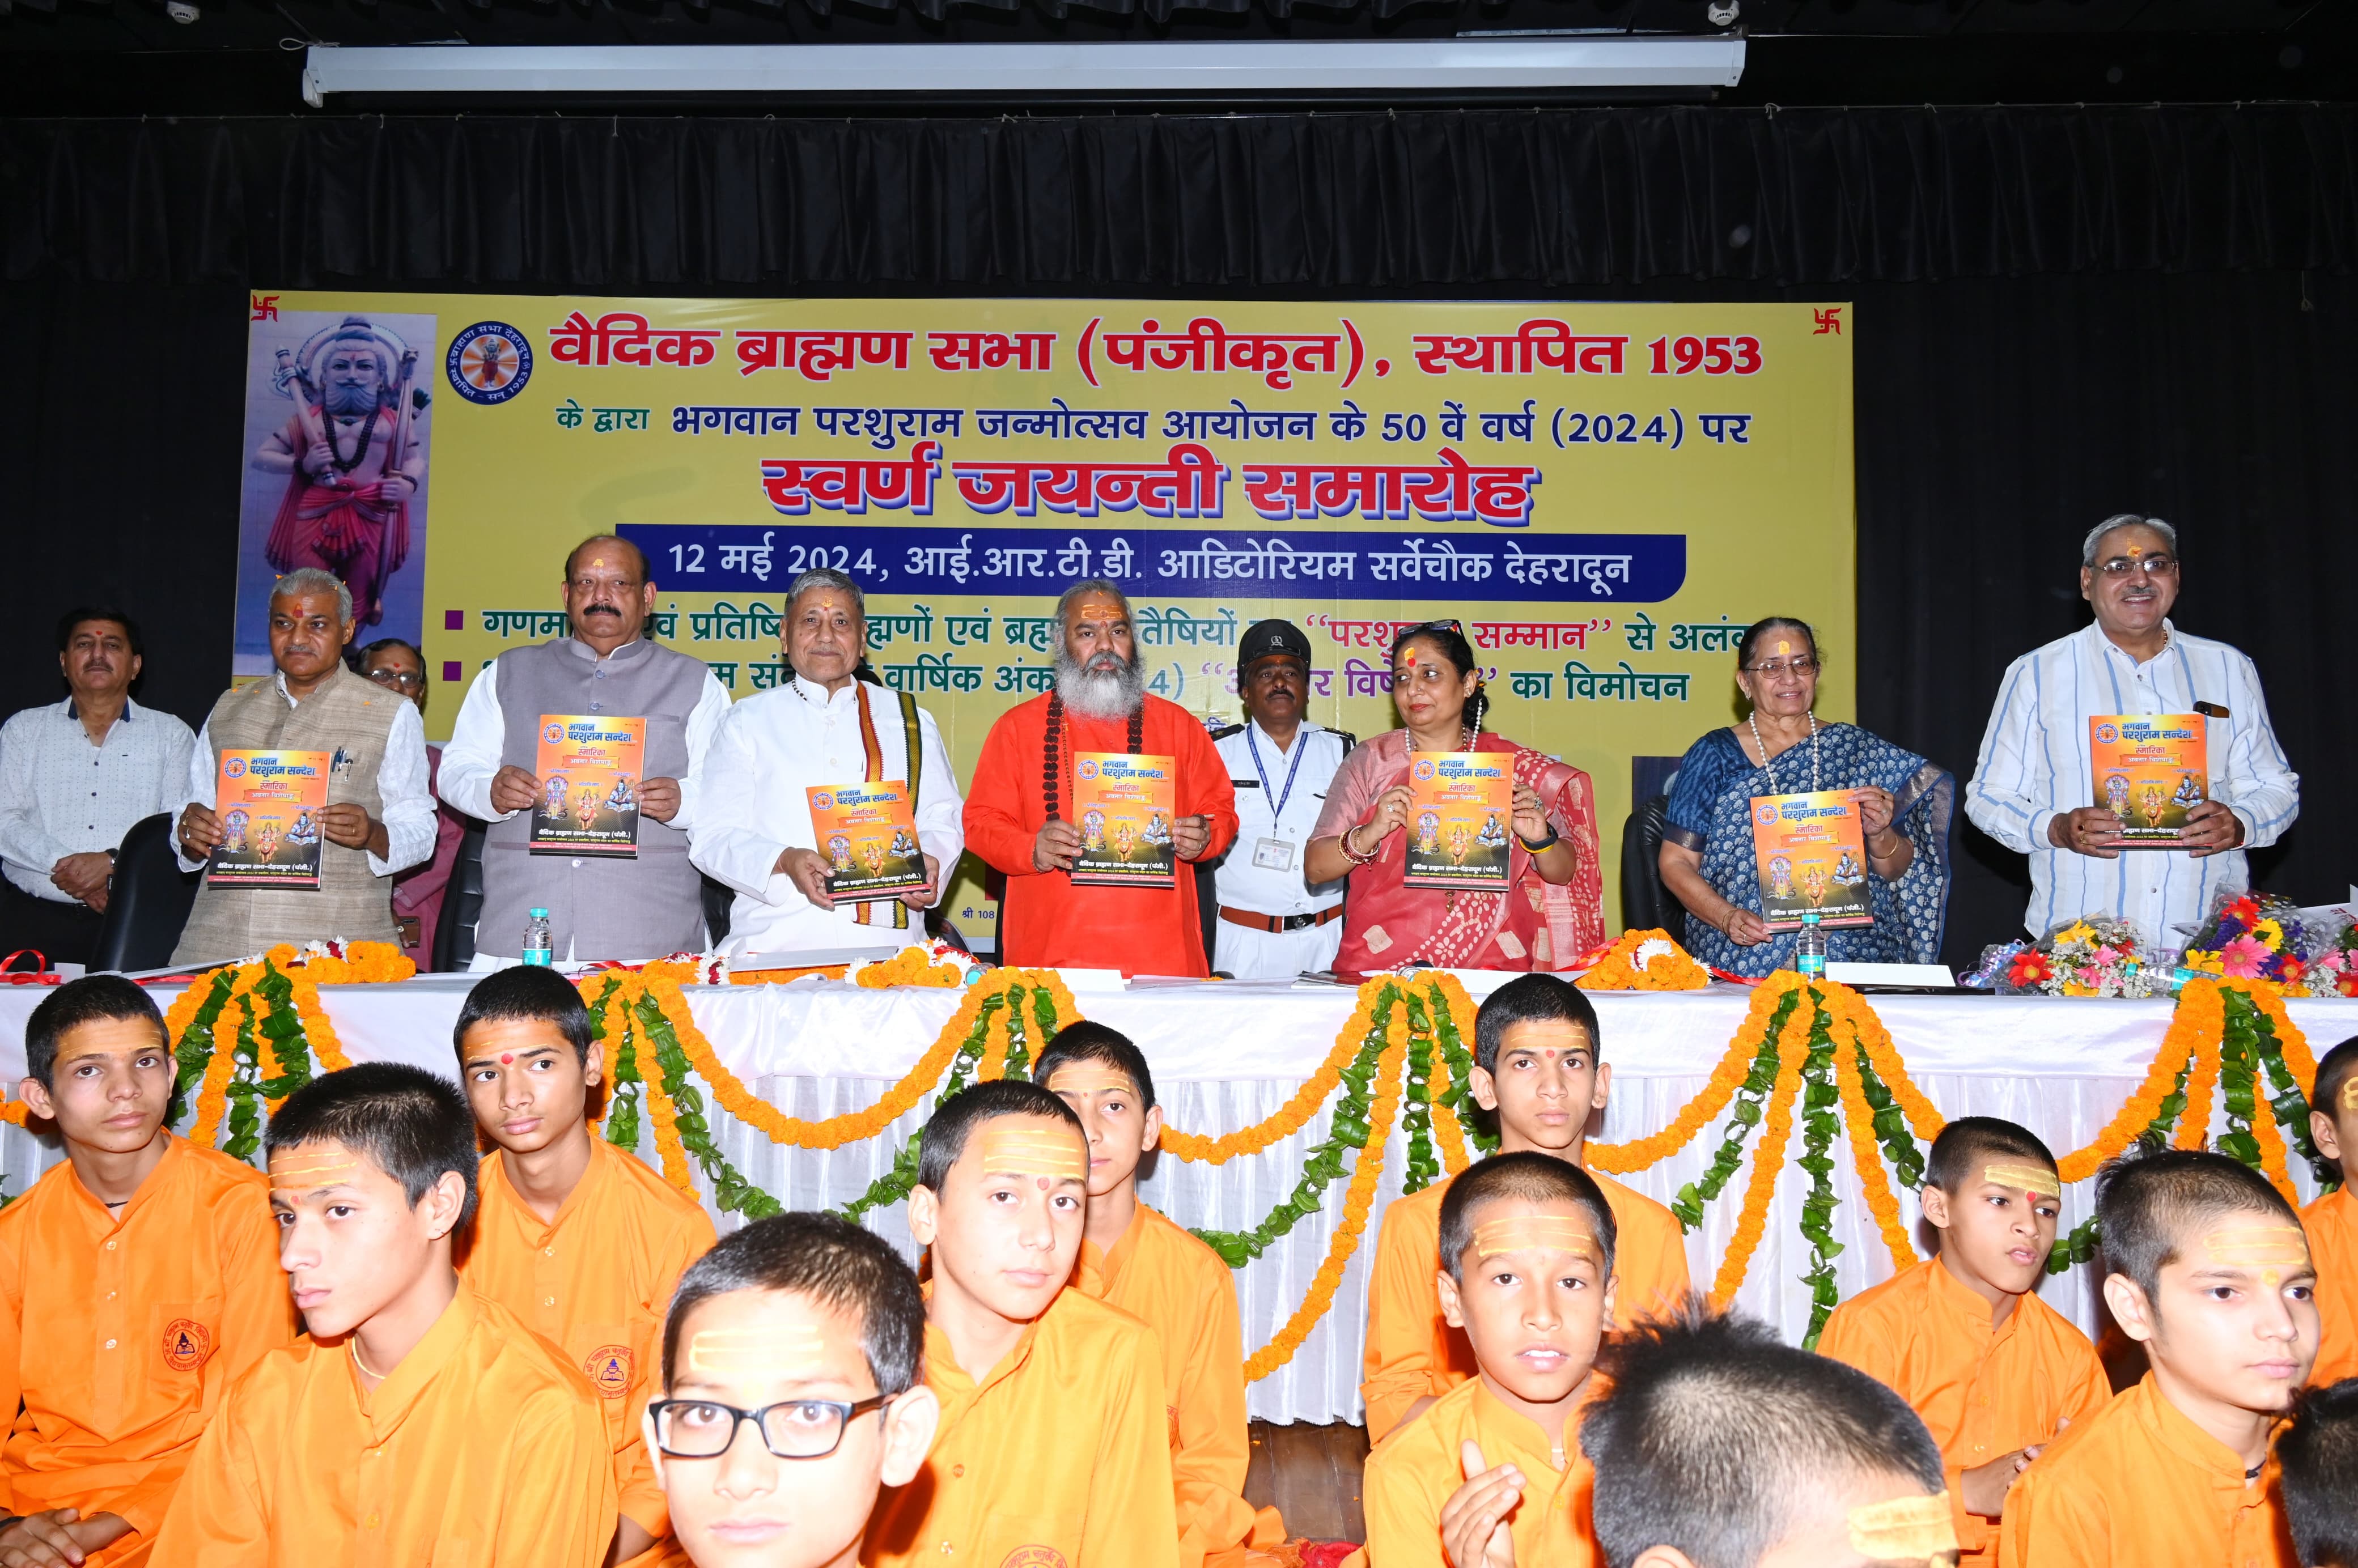 Vedic Brahmin Sabha honored distinguished people